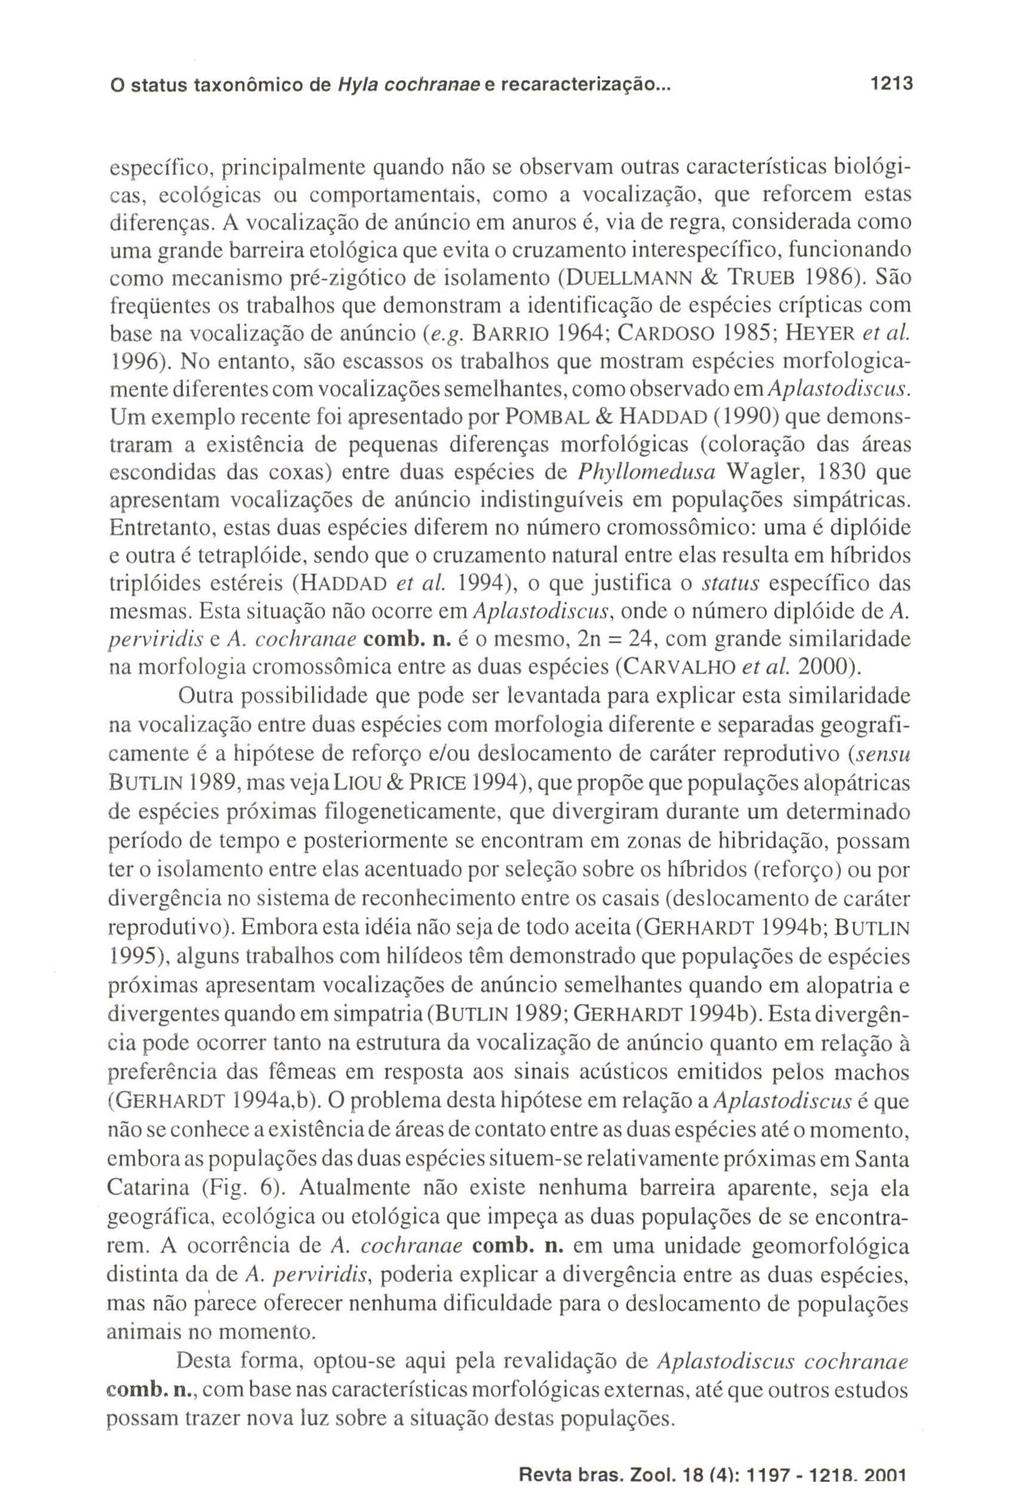 Revta bras. Zool. 18 (4): 1197-1218. 2001 o status taxonômico de Hy/a cochranae e recaracterização.